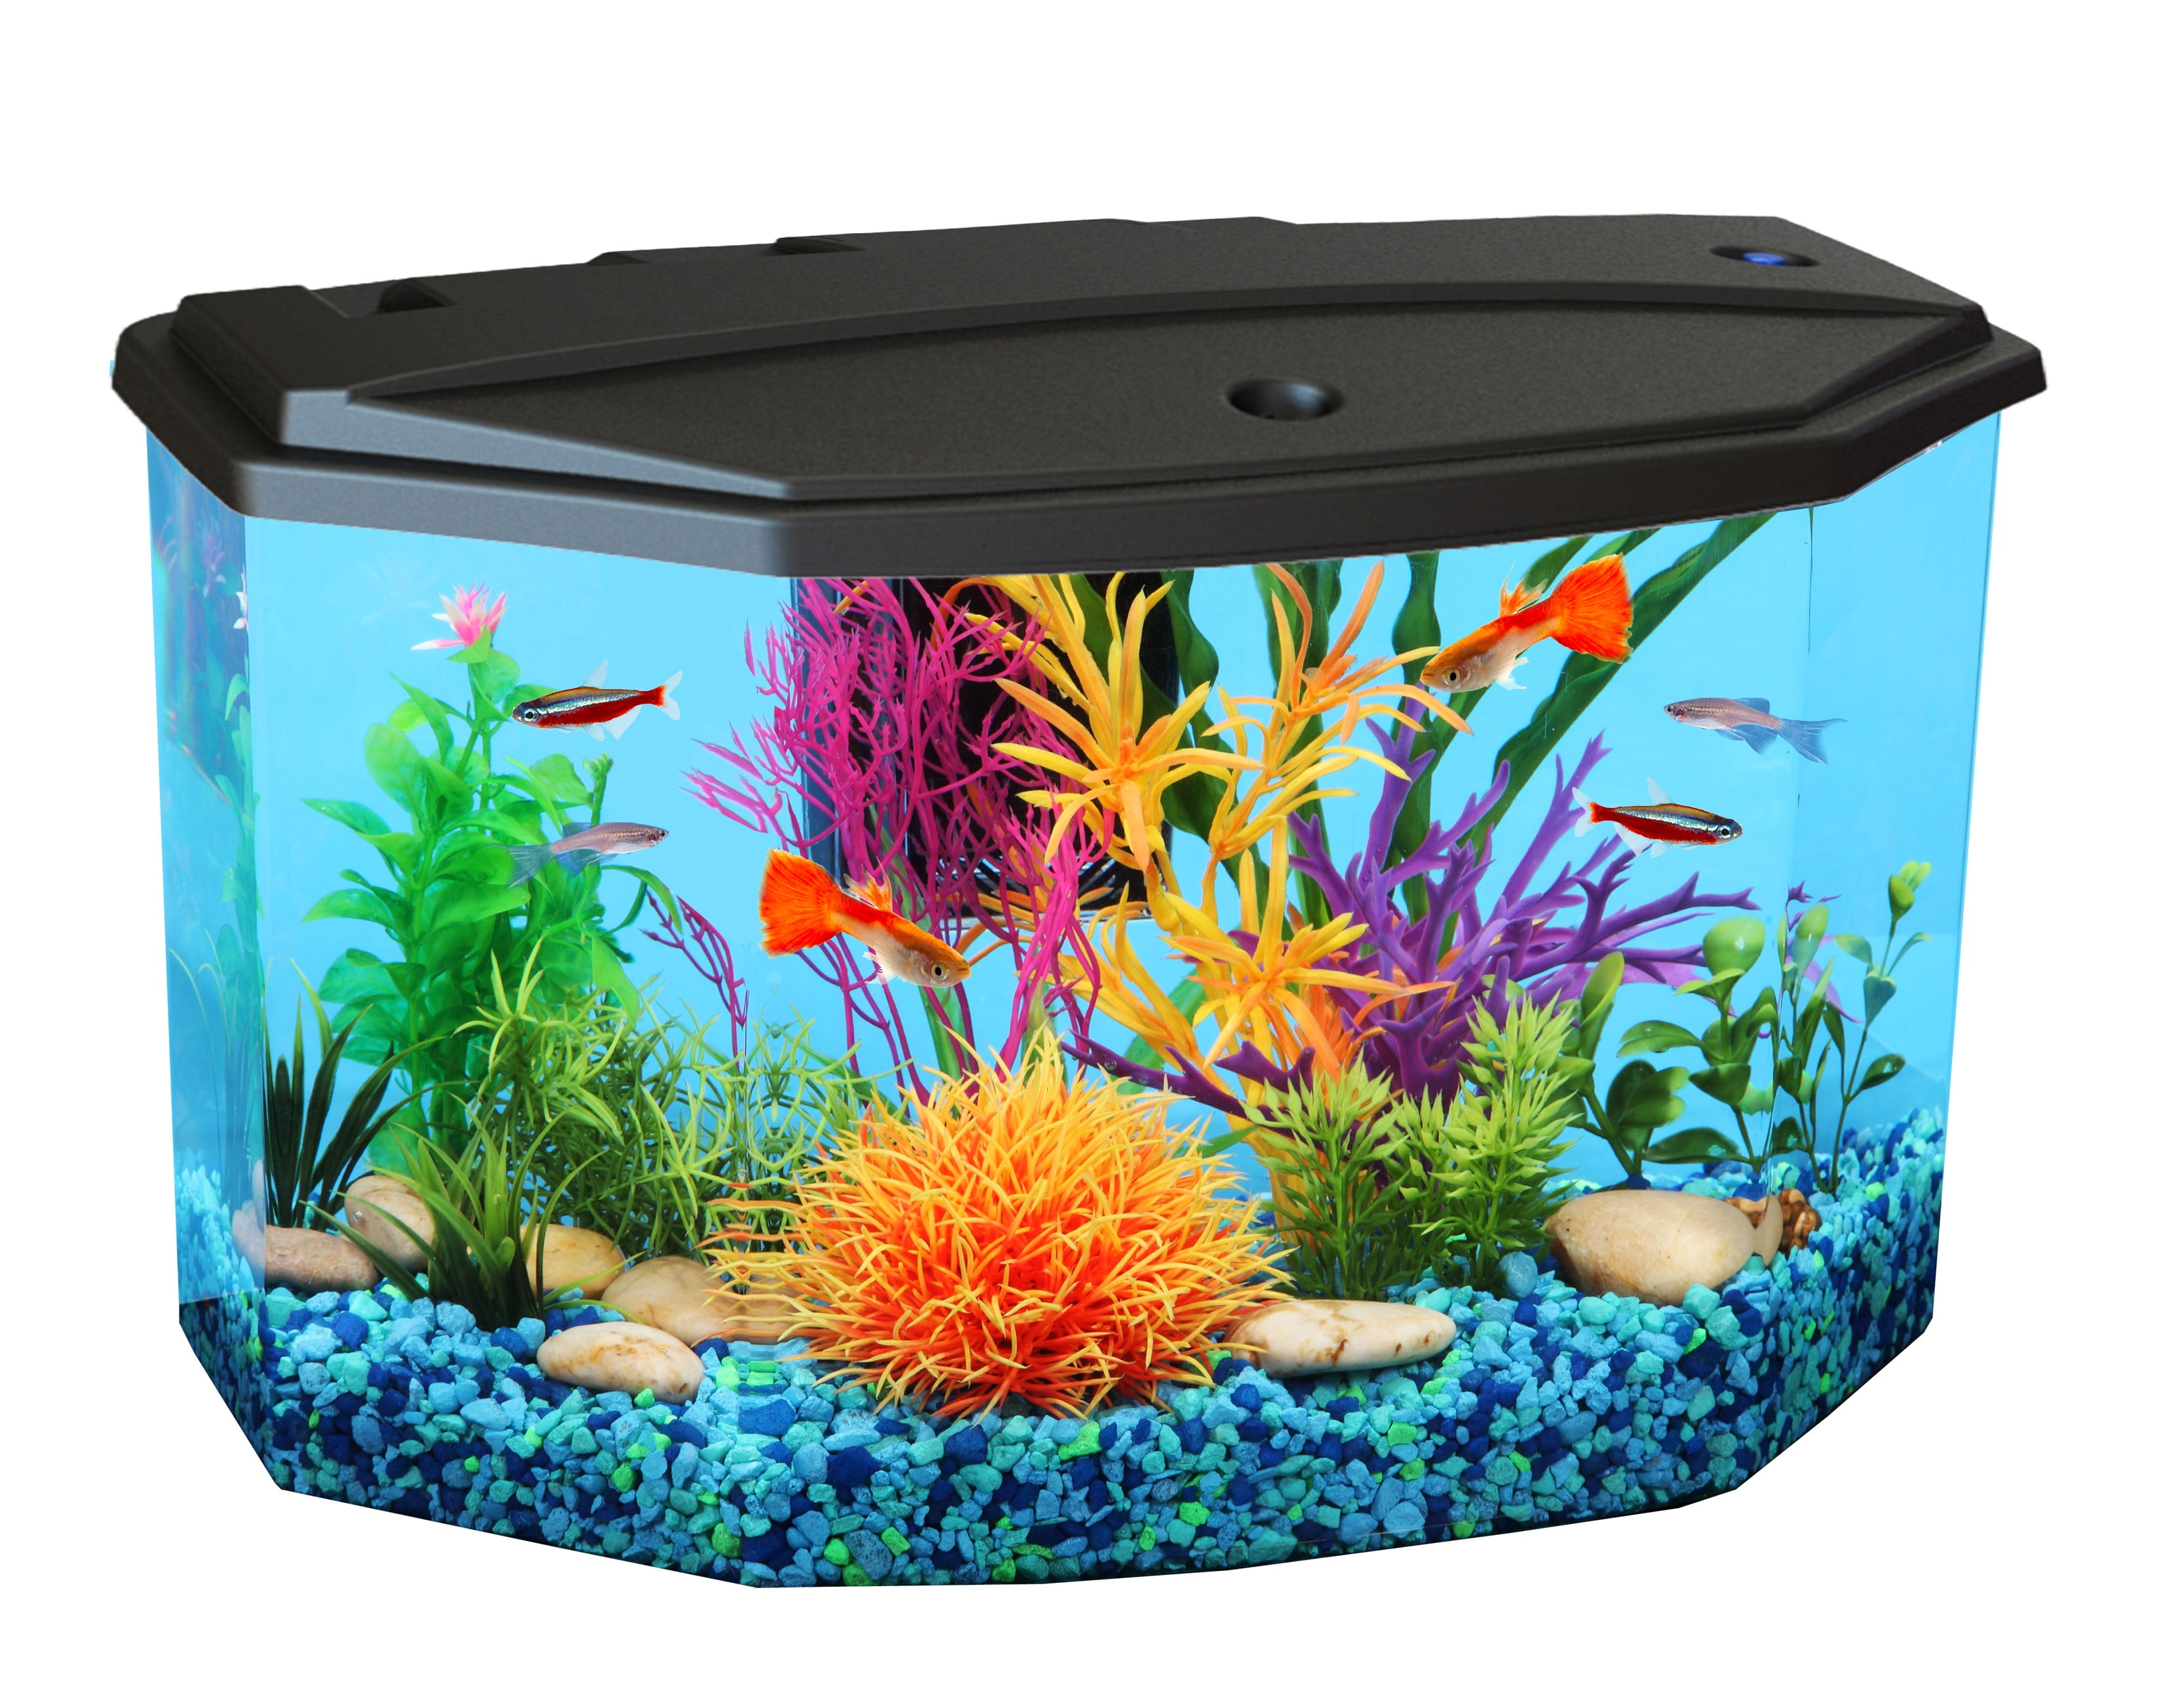 KollerCraft 3-Gallon Aquarium with LED Lighting and Jordan